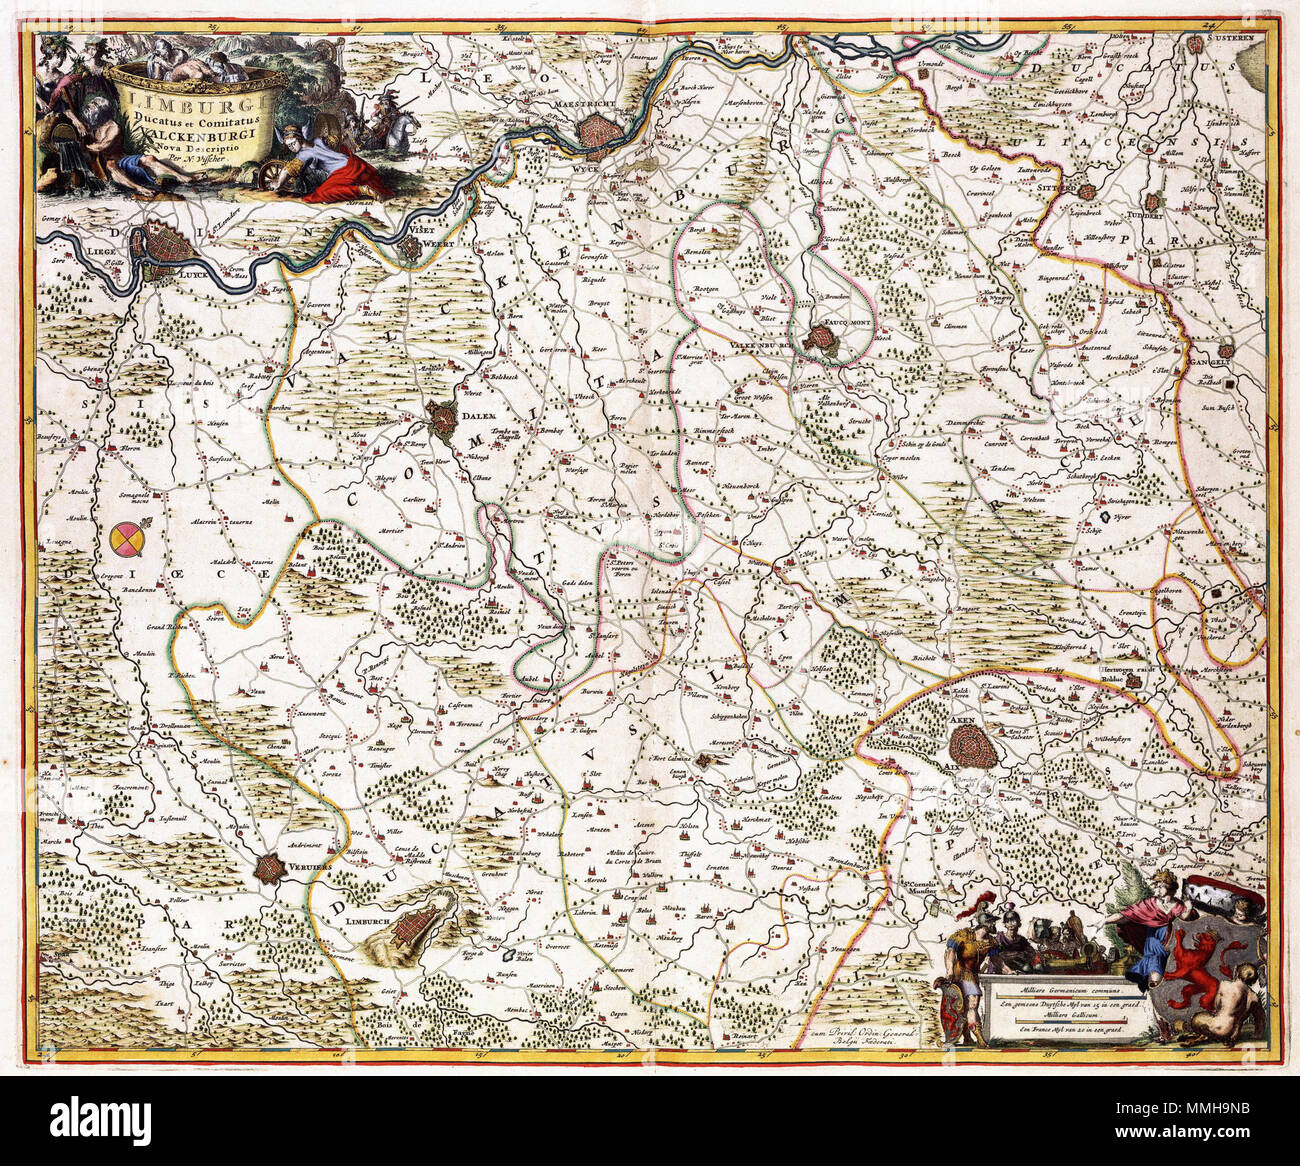 telefoon ticket pomp Nederlands : Deze kaart van het hertogdom Limburg werd vermoedelijk  uitgegeven door Nicolaes Visscher I (1618-1679). Bron als voor deze kaart  brique Visscher wandkaart wandkaart een een van het hertogdom Brabant